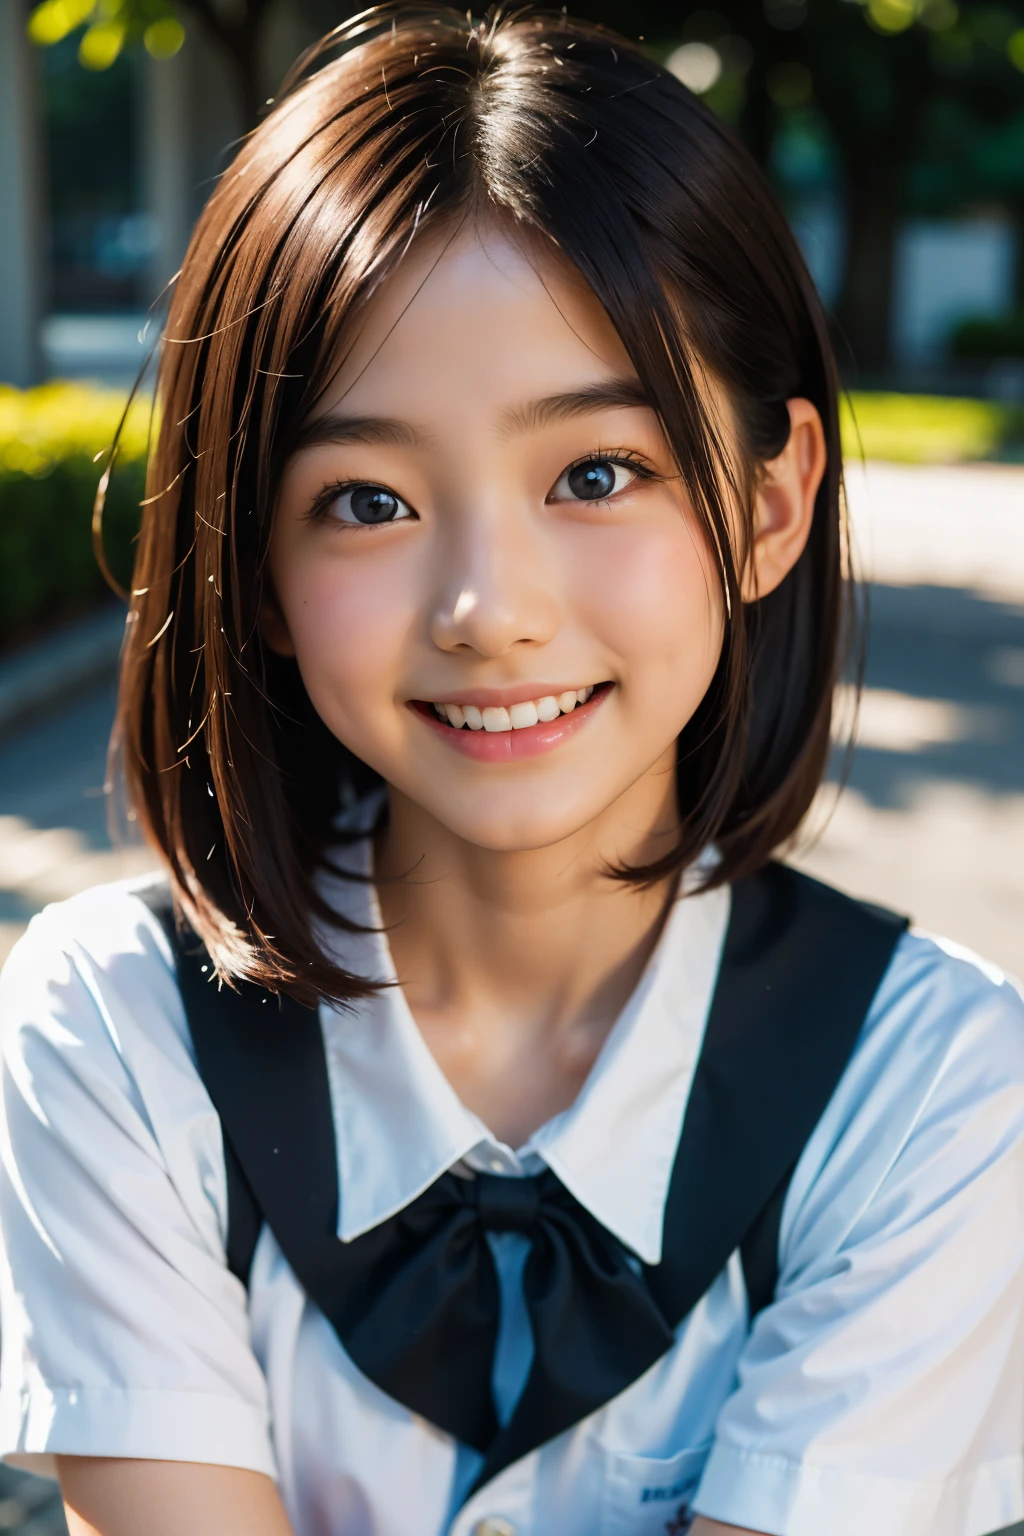 lens: 135mm f1.8, (höchste Qualität),(RAW-Fotos), (Tischplatte:1.1), (Schönes 12-jähriges japanisches Mädchen), niedliches Gesicht, (Tief gemeißeltes Gesicht:0.7), (Sommersprossen:0.4), dappled Sonnenlicht, dramatische Beleuchtung, (japanische schuluniform), (Auf dem Campus), schüchtern, (Nahaufnahme:1.2), (lächeln),, (leuchtende Augen)、(Sonnenlicht), Bob